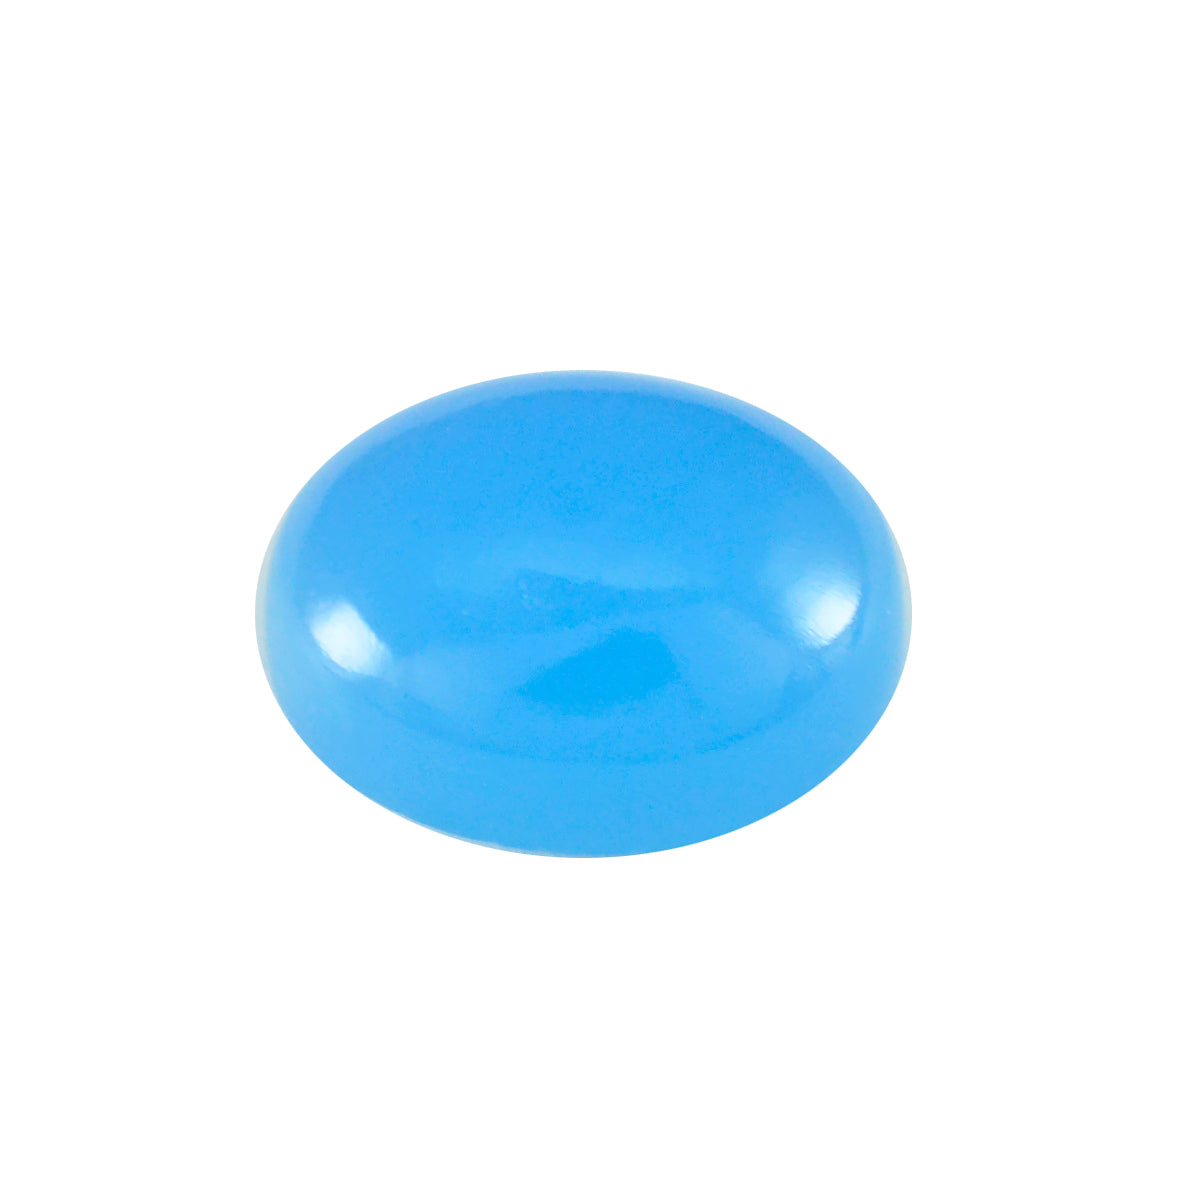 Riyogems 1 pieza cabujón de Calcedonia azul 10x14mm forma ovalada gemas de calidad increíble